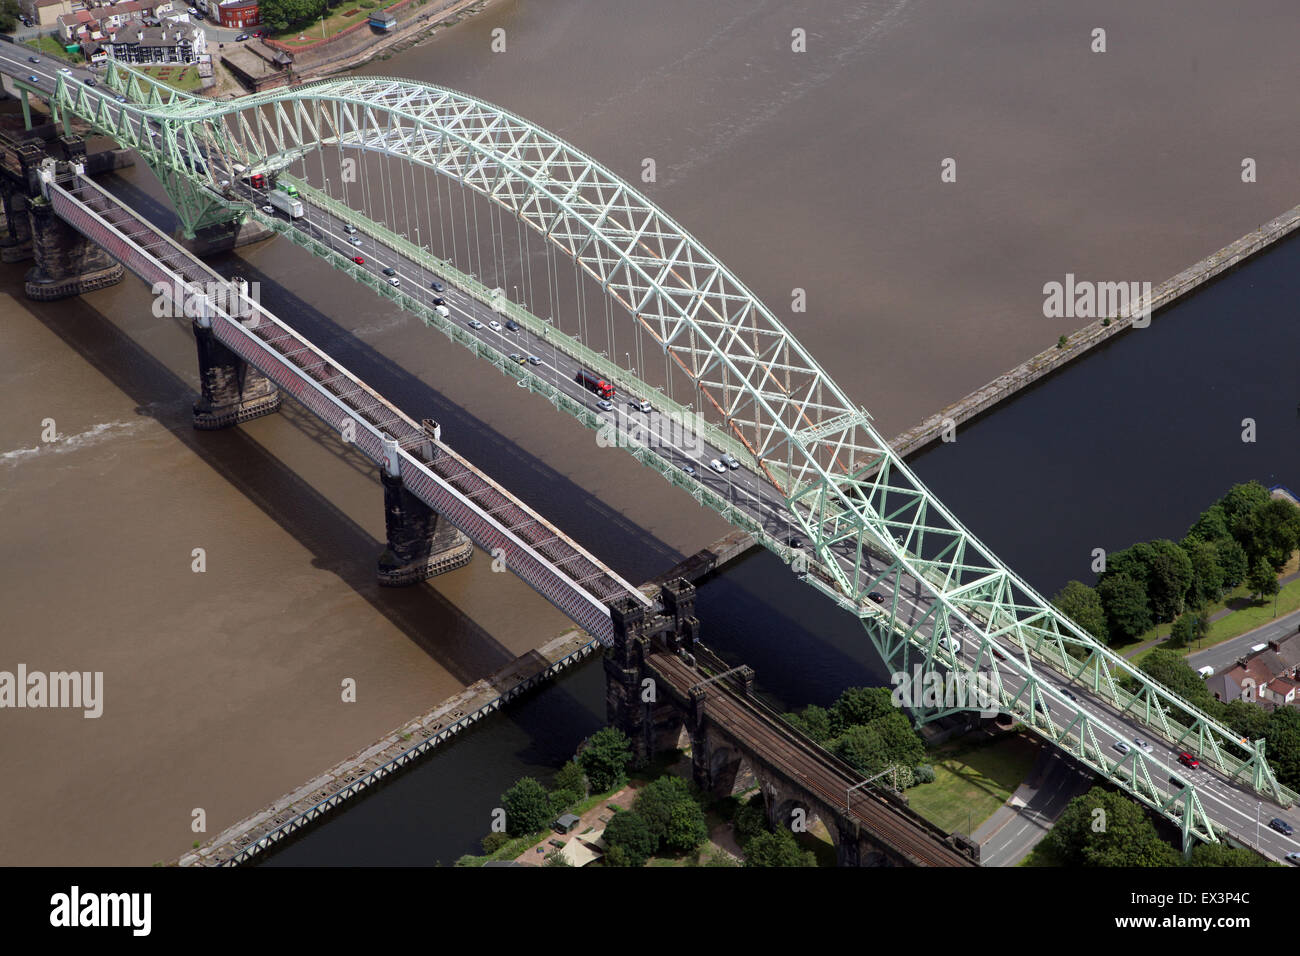 aerial view of Runcorn Bridge in Cheshire, UK Stock Photo